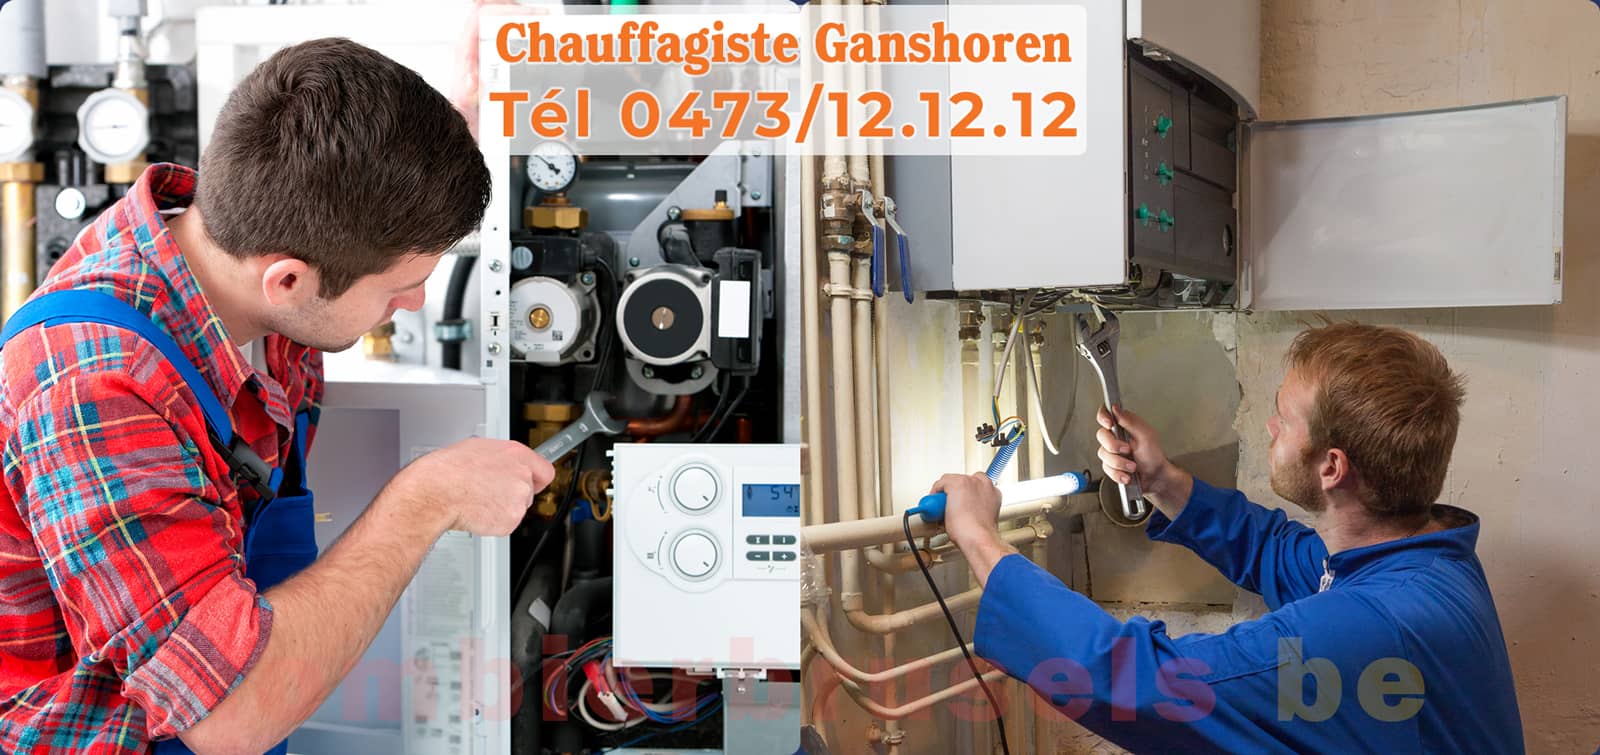 Chauffagiste Ganshoren service de Chauffage tél 0473/12.12.12